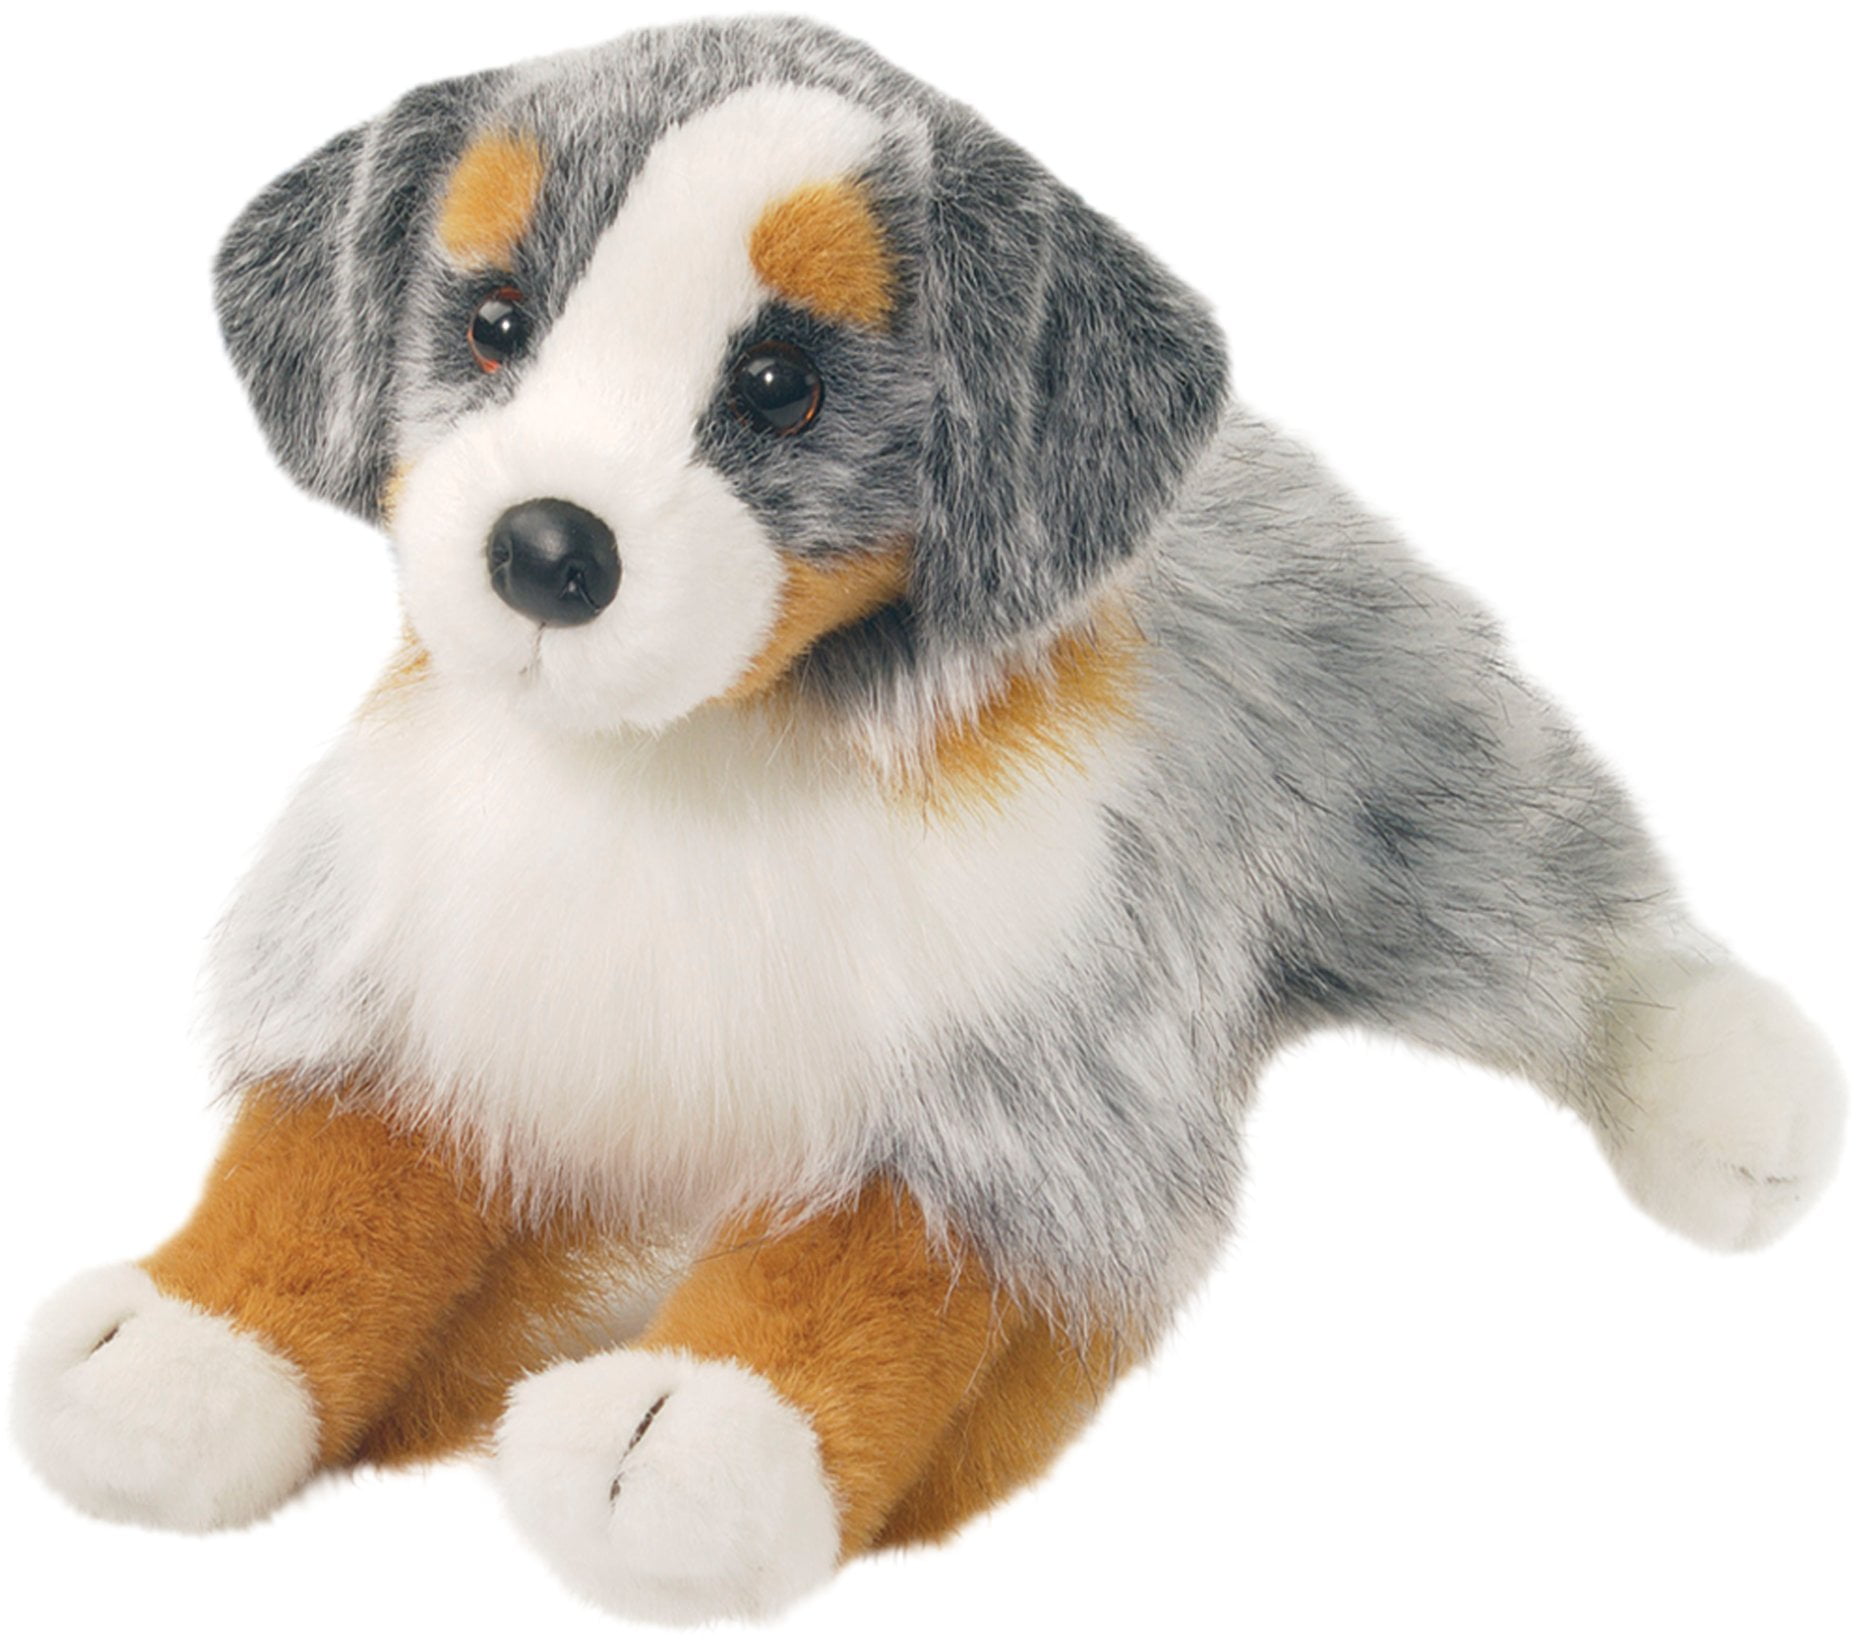 DIXIE Douglas plush 14" long SHELTIE stuffed animal dog cuddle toy shelty collie 